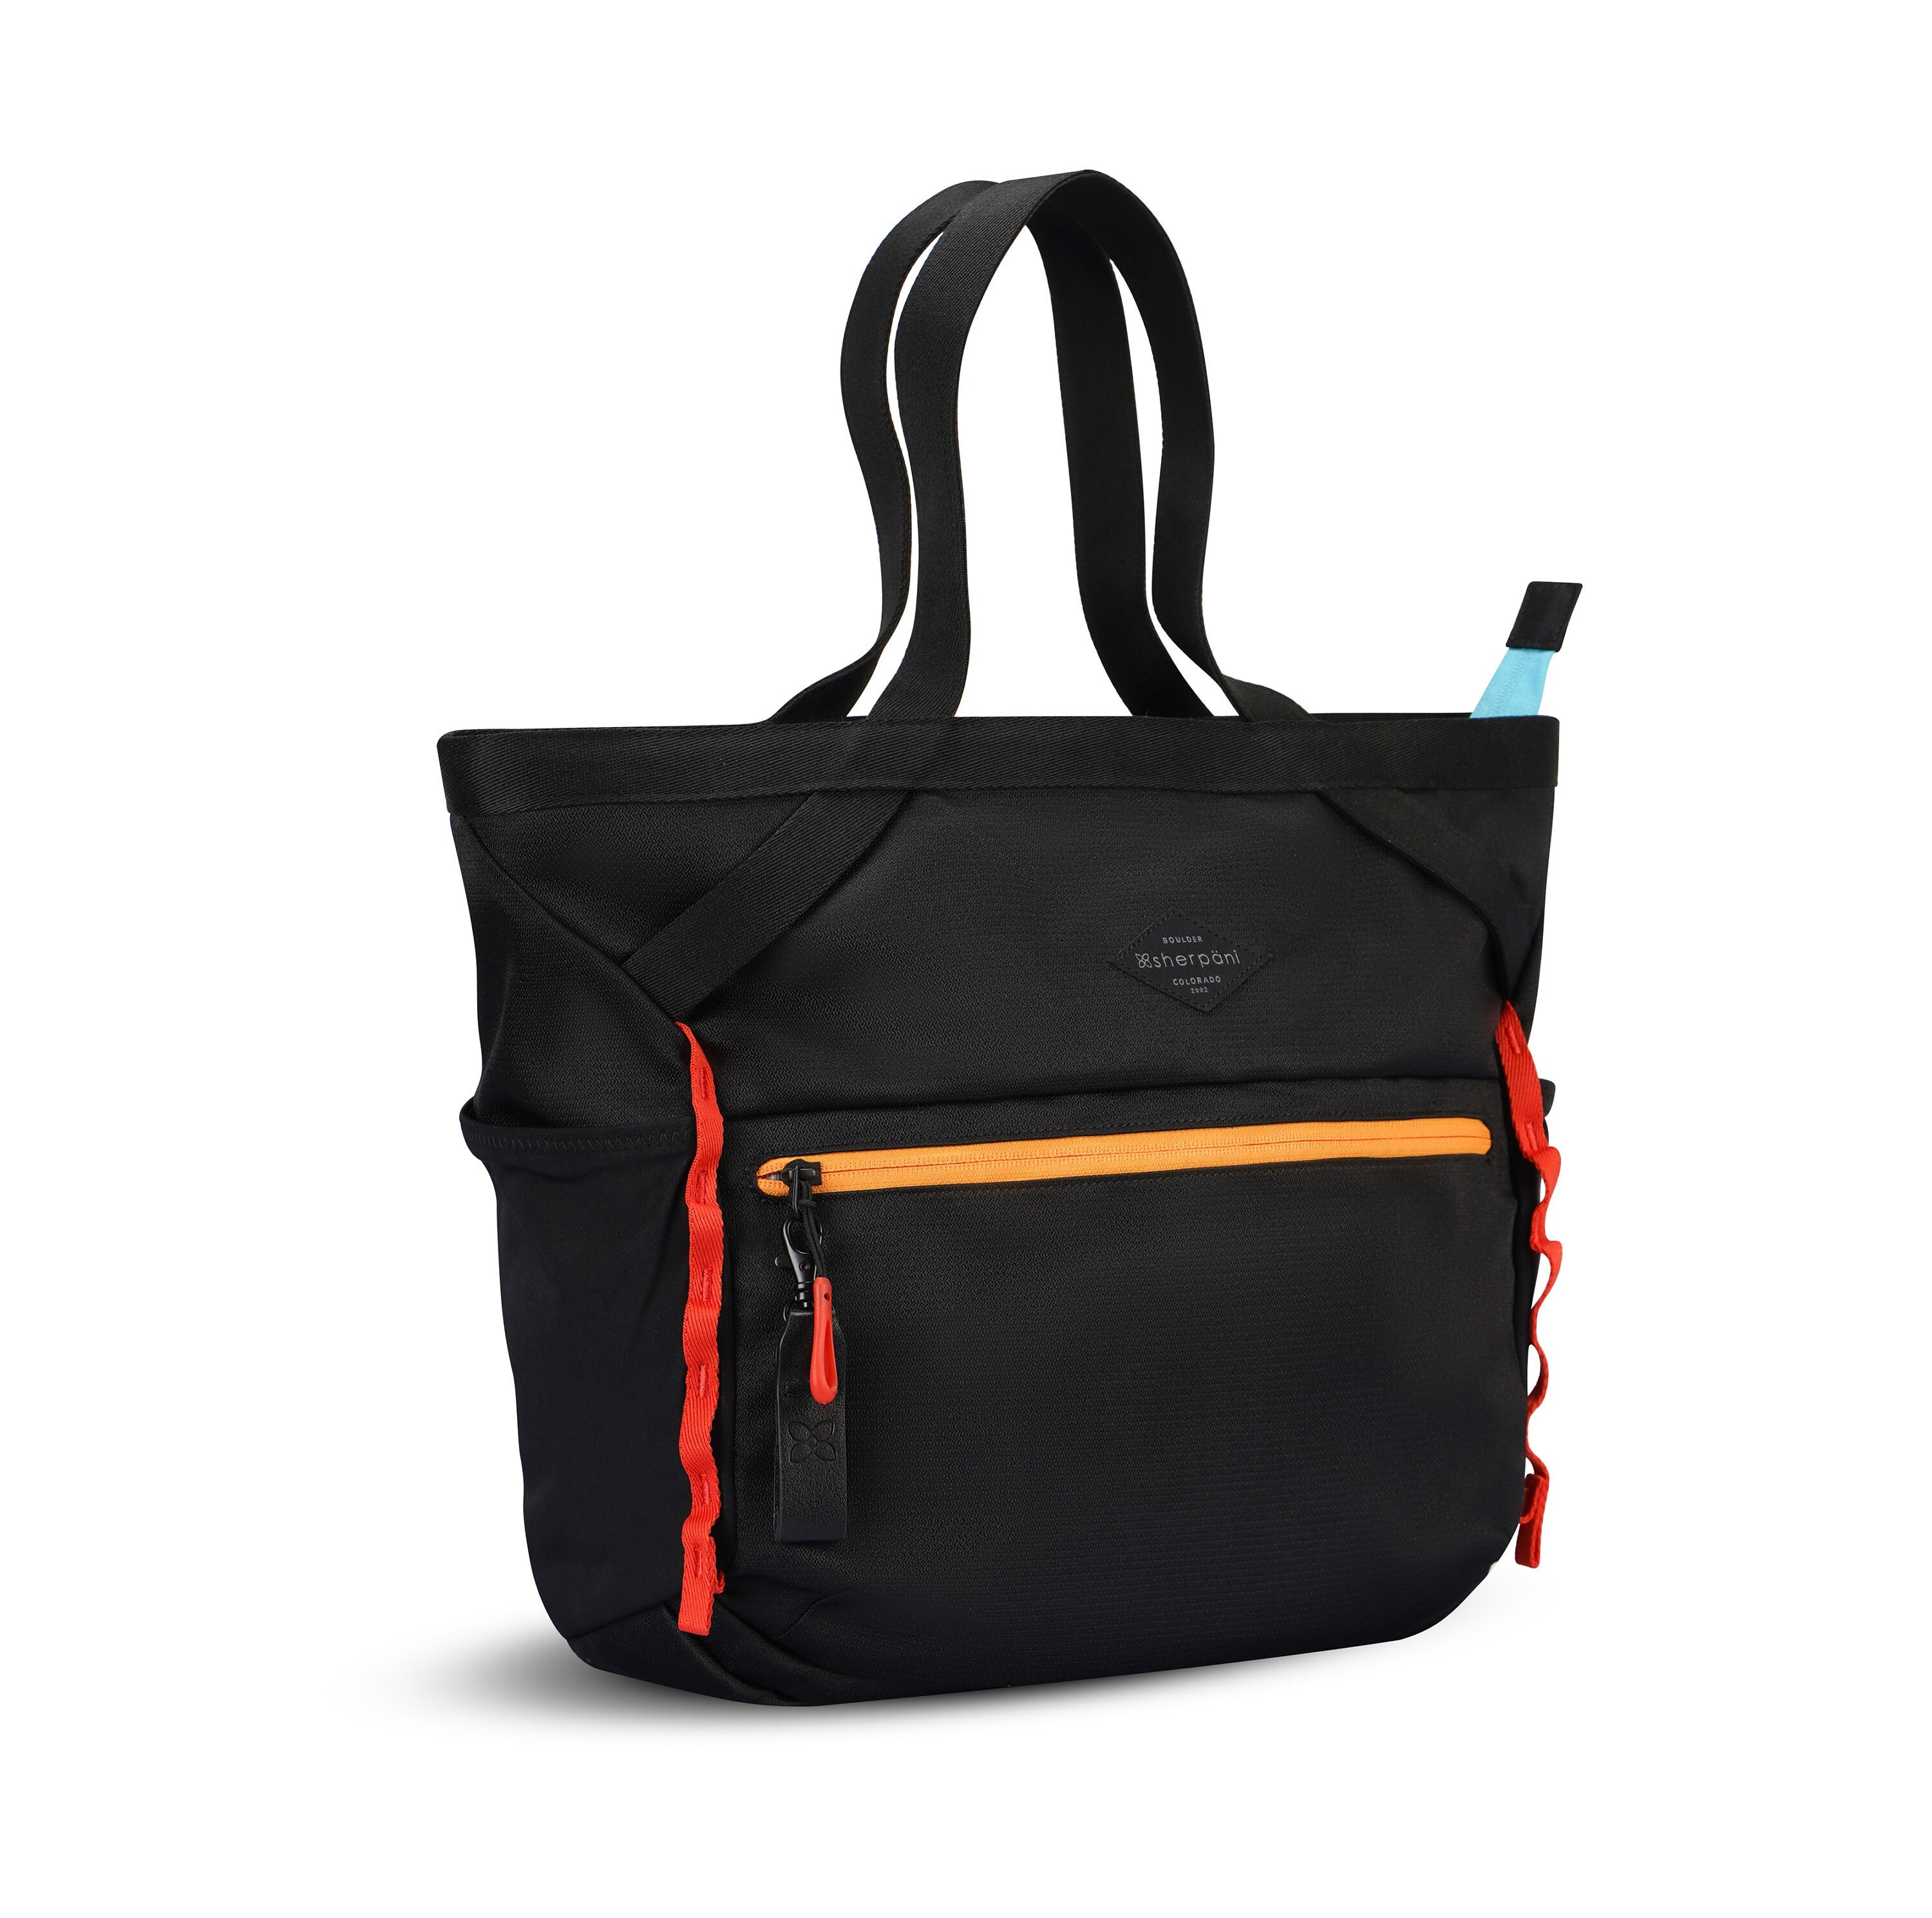 All Over Print Stylish and Functional Shoulder Handbag for Work & Travel Distress USA Flag Tote Bag